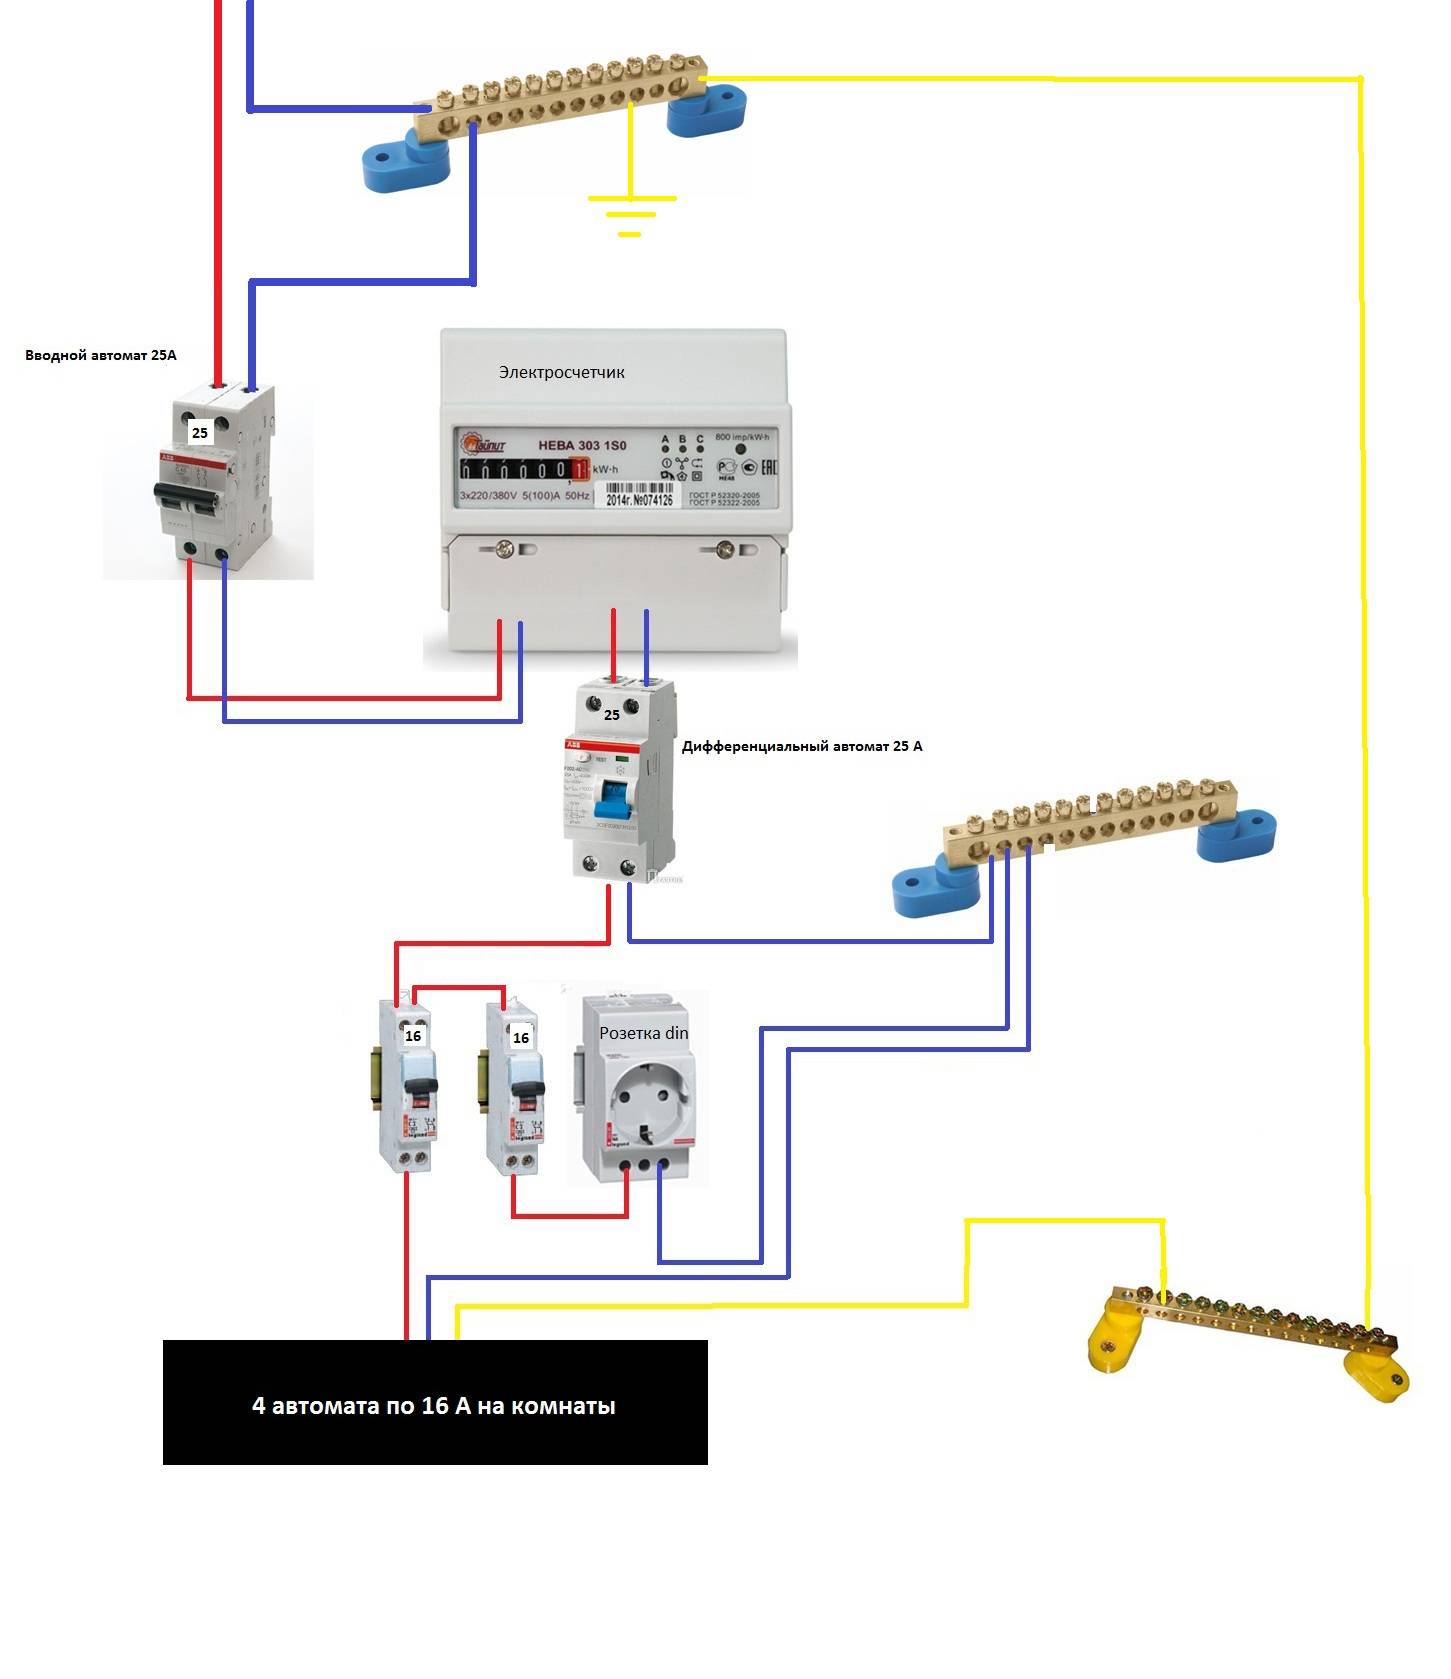 Дифференциальный автоматический выключатель тока: для чего нужен, схема подключения (в том числе в однофазной сети)